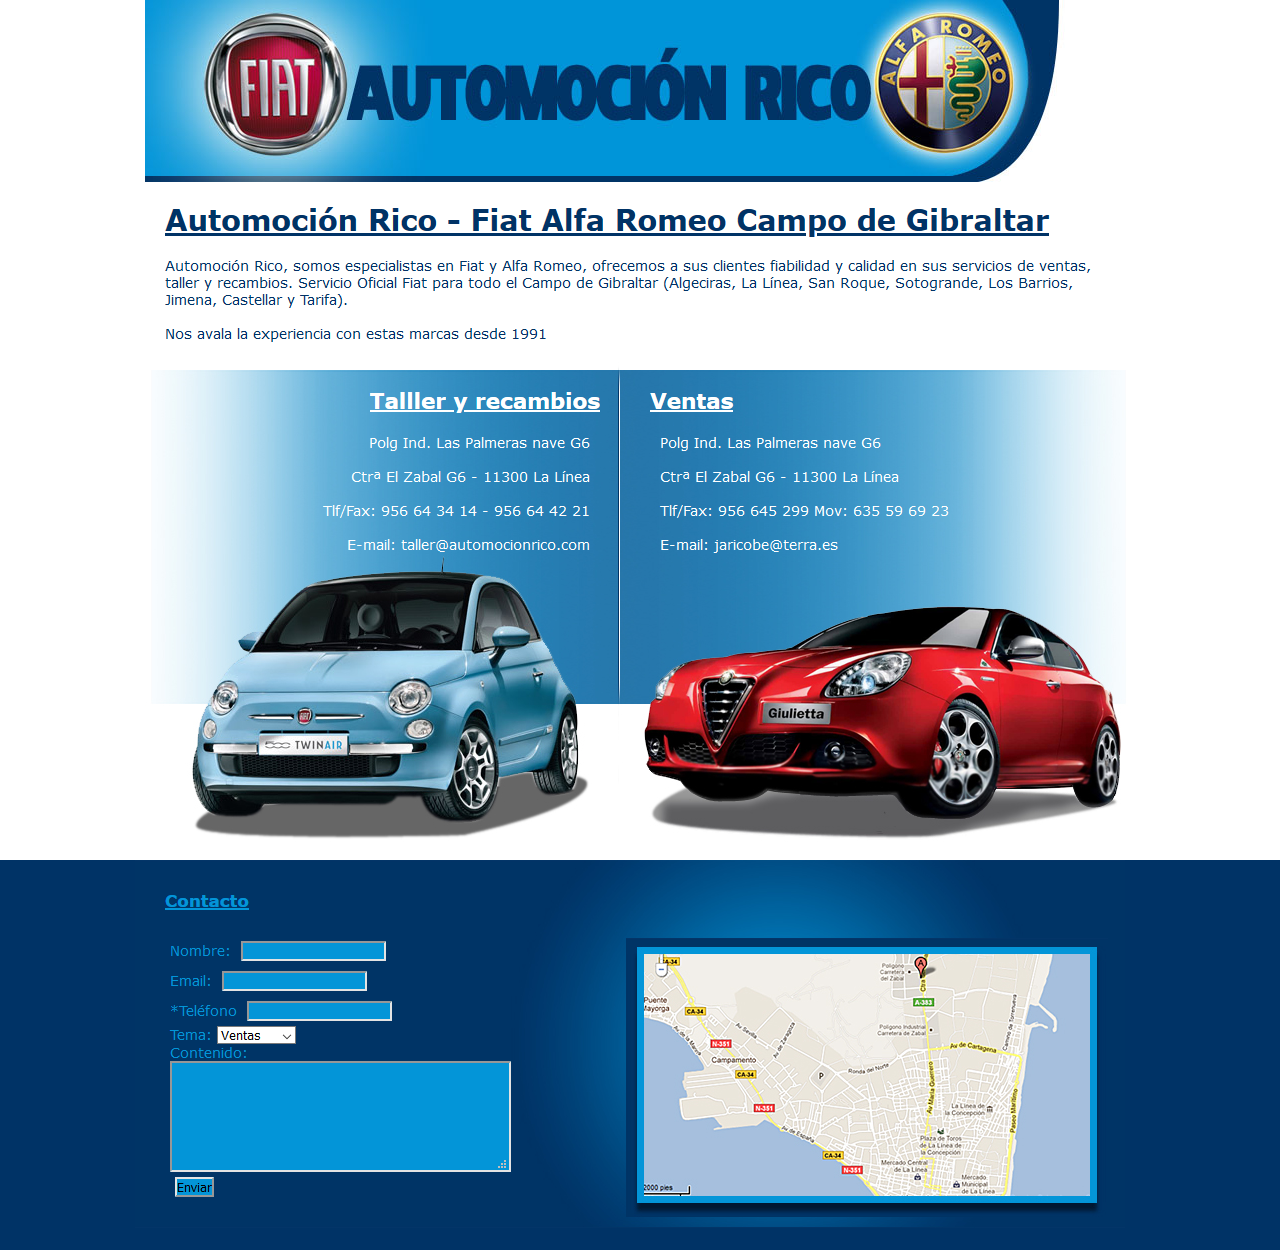 Automoción Rico - Fiat Alfa Romeo Campo de Gibraltar. Html, Css, Php, Photoshop. Año 2011